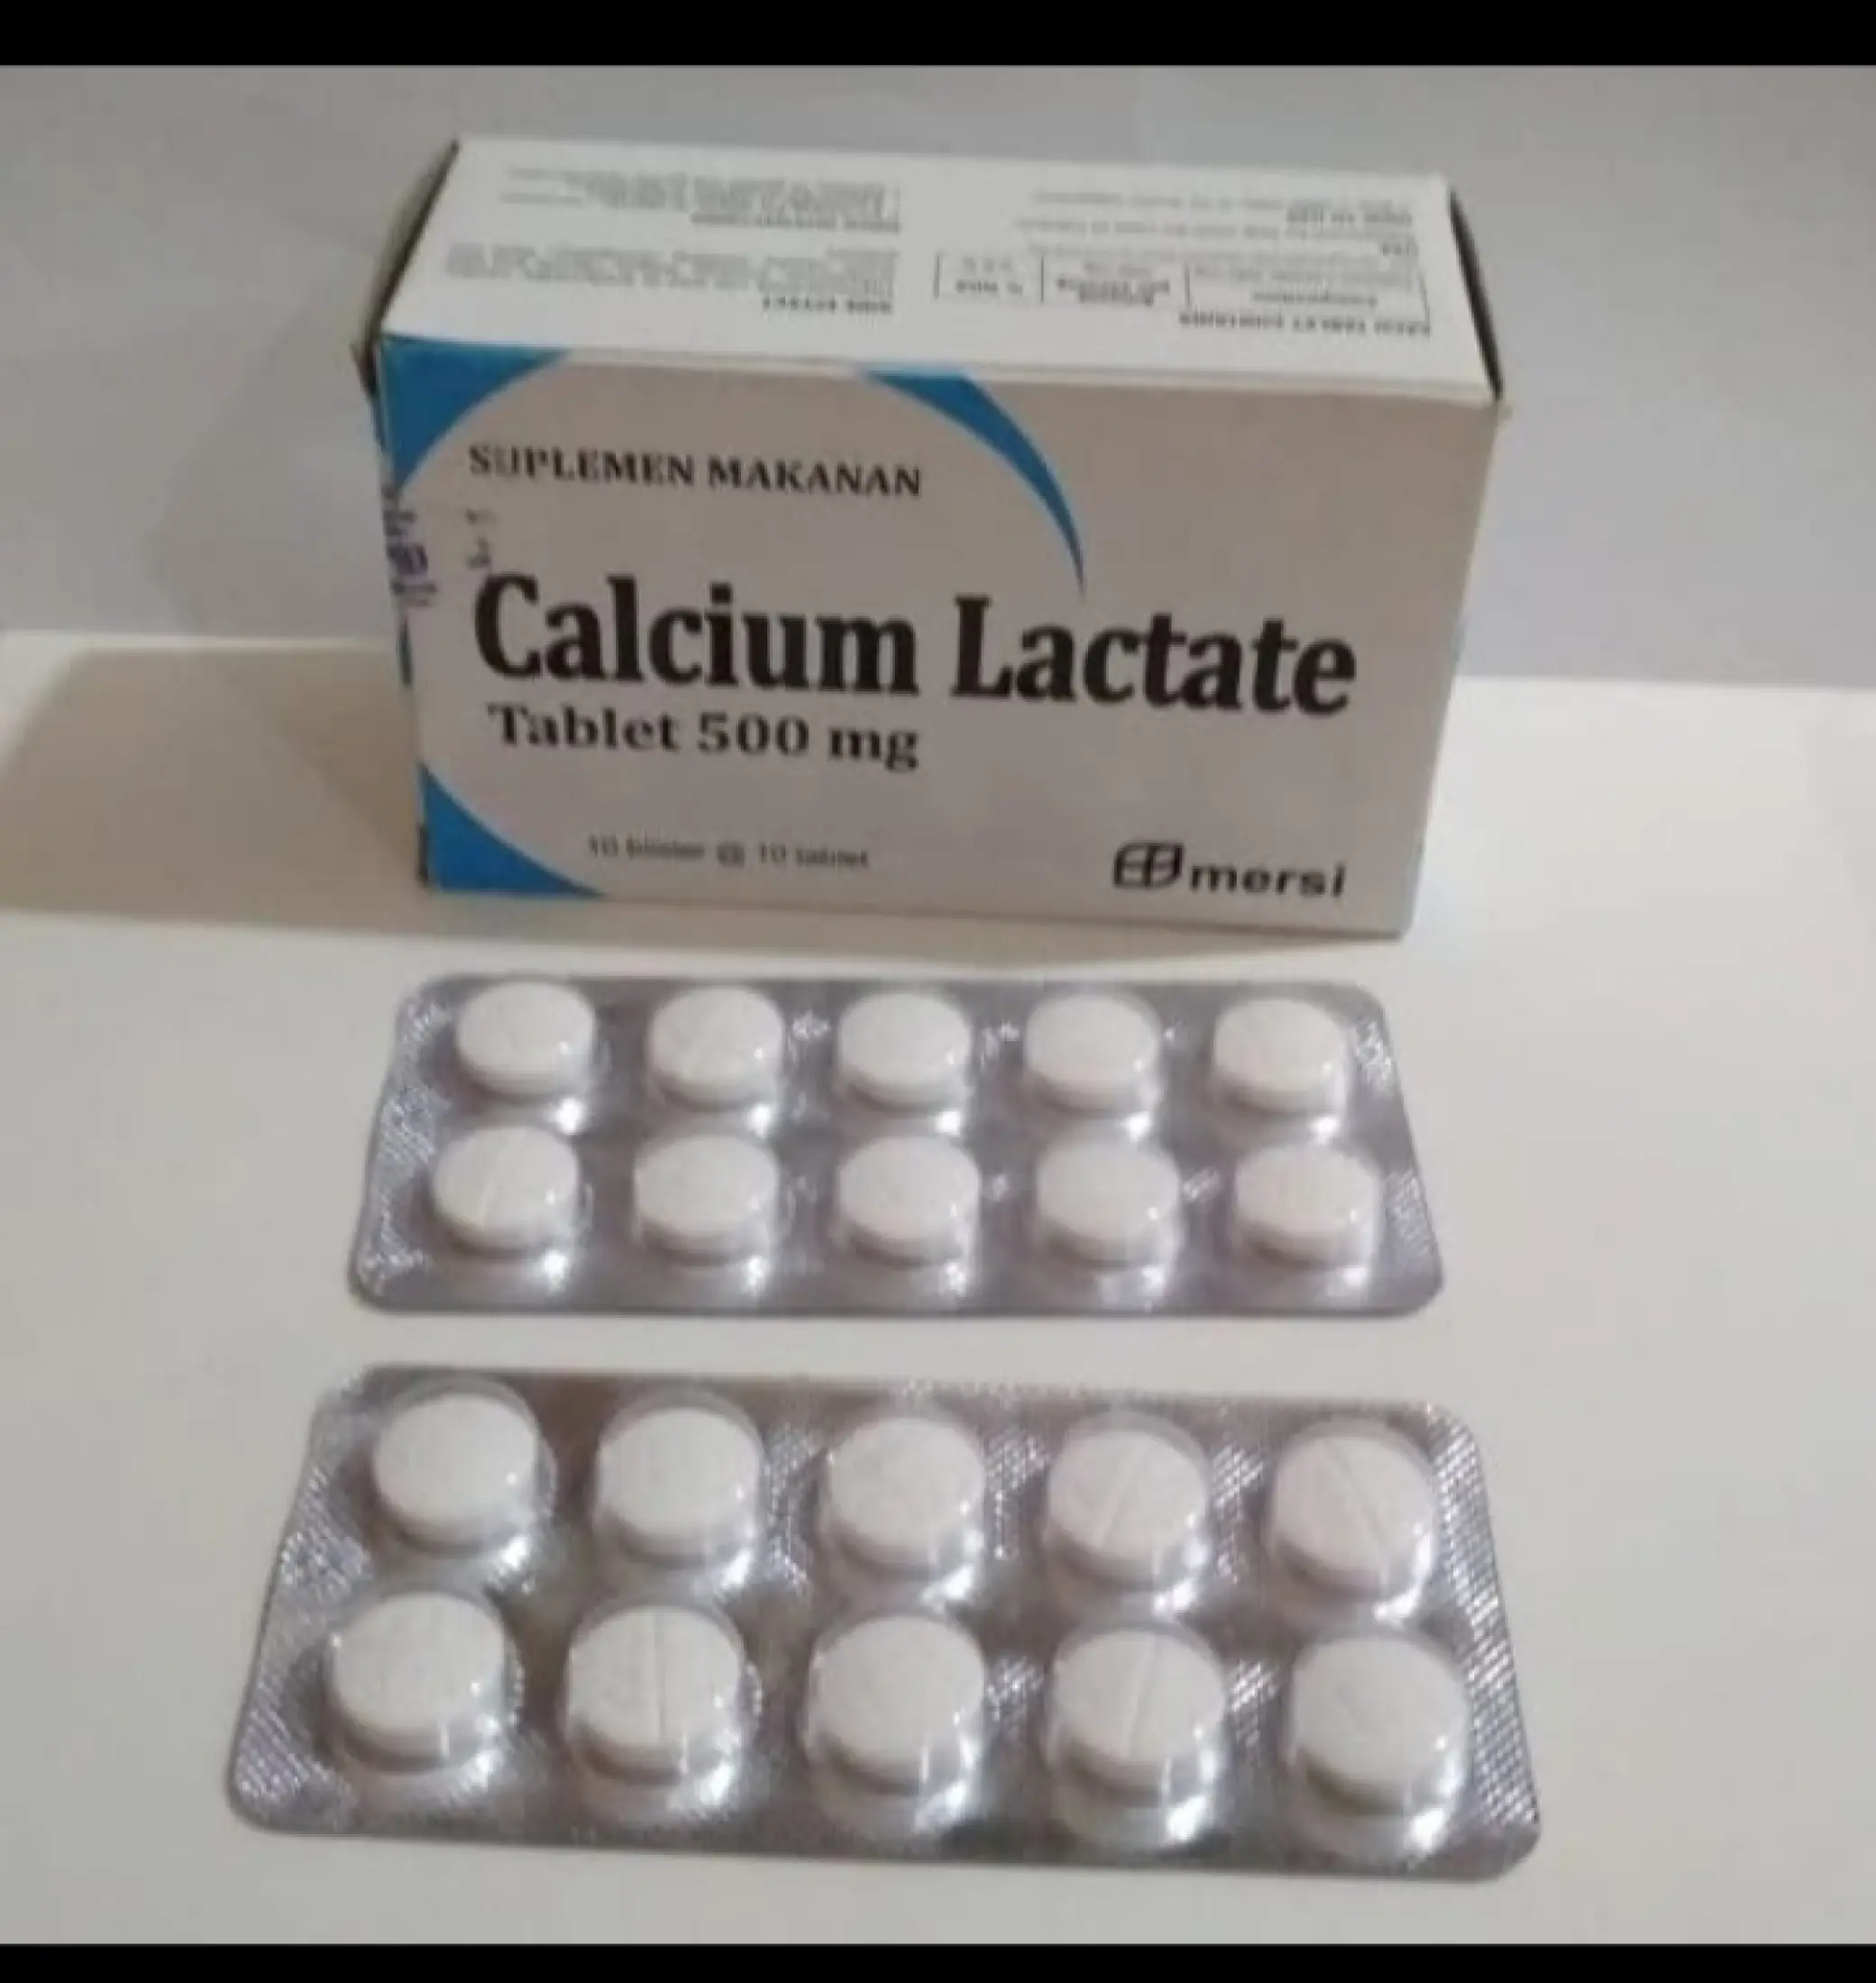 Calcium lactate